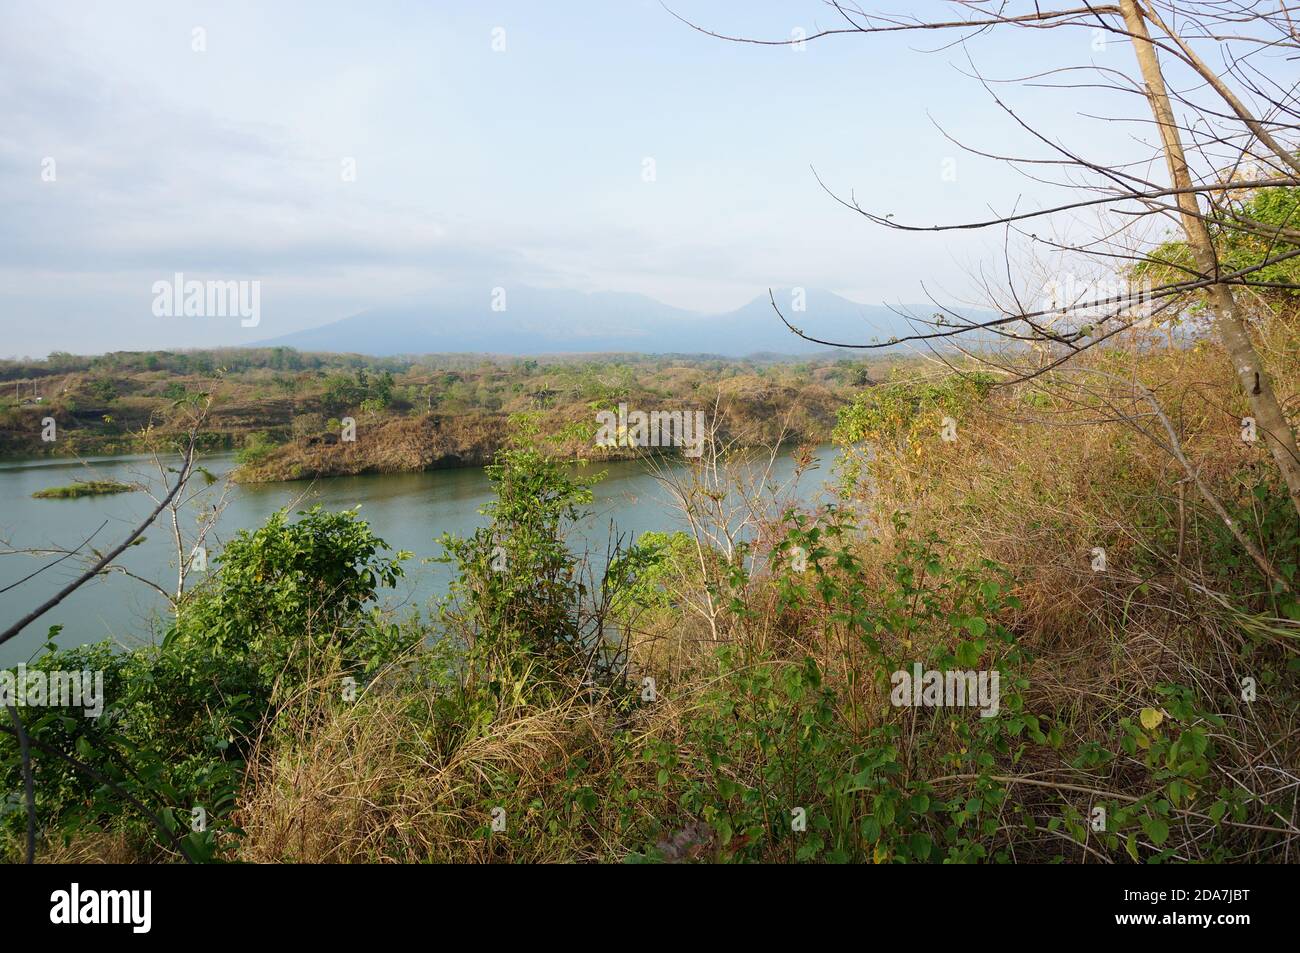 Reservoir ist ein künstlicher See als Flussdamm, der Wasser speichern soll verwendet. Stockfoto